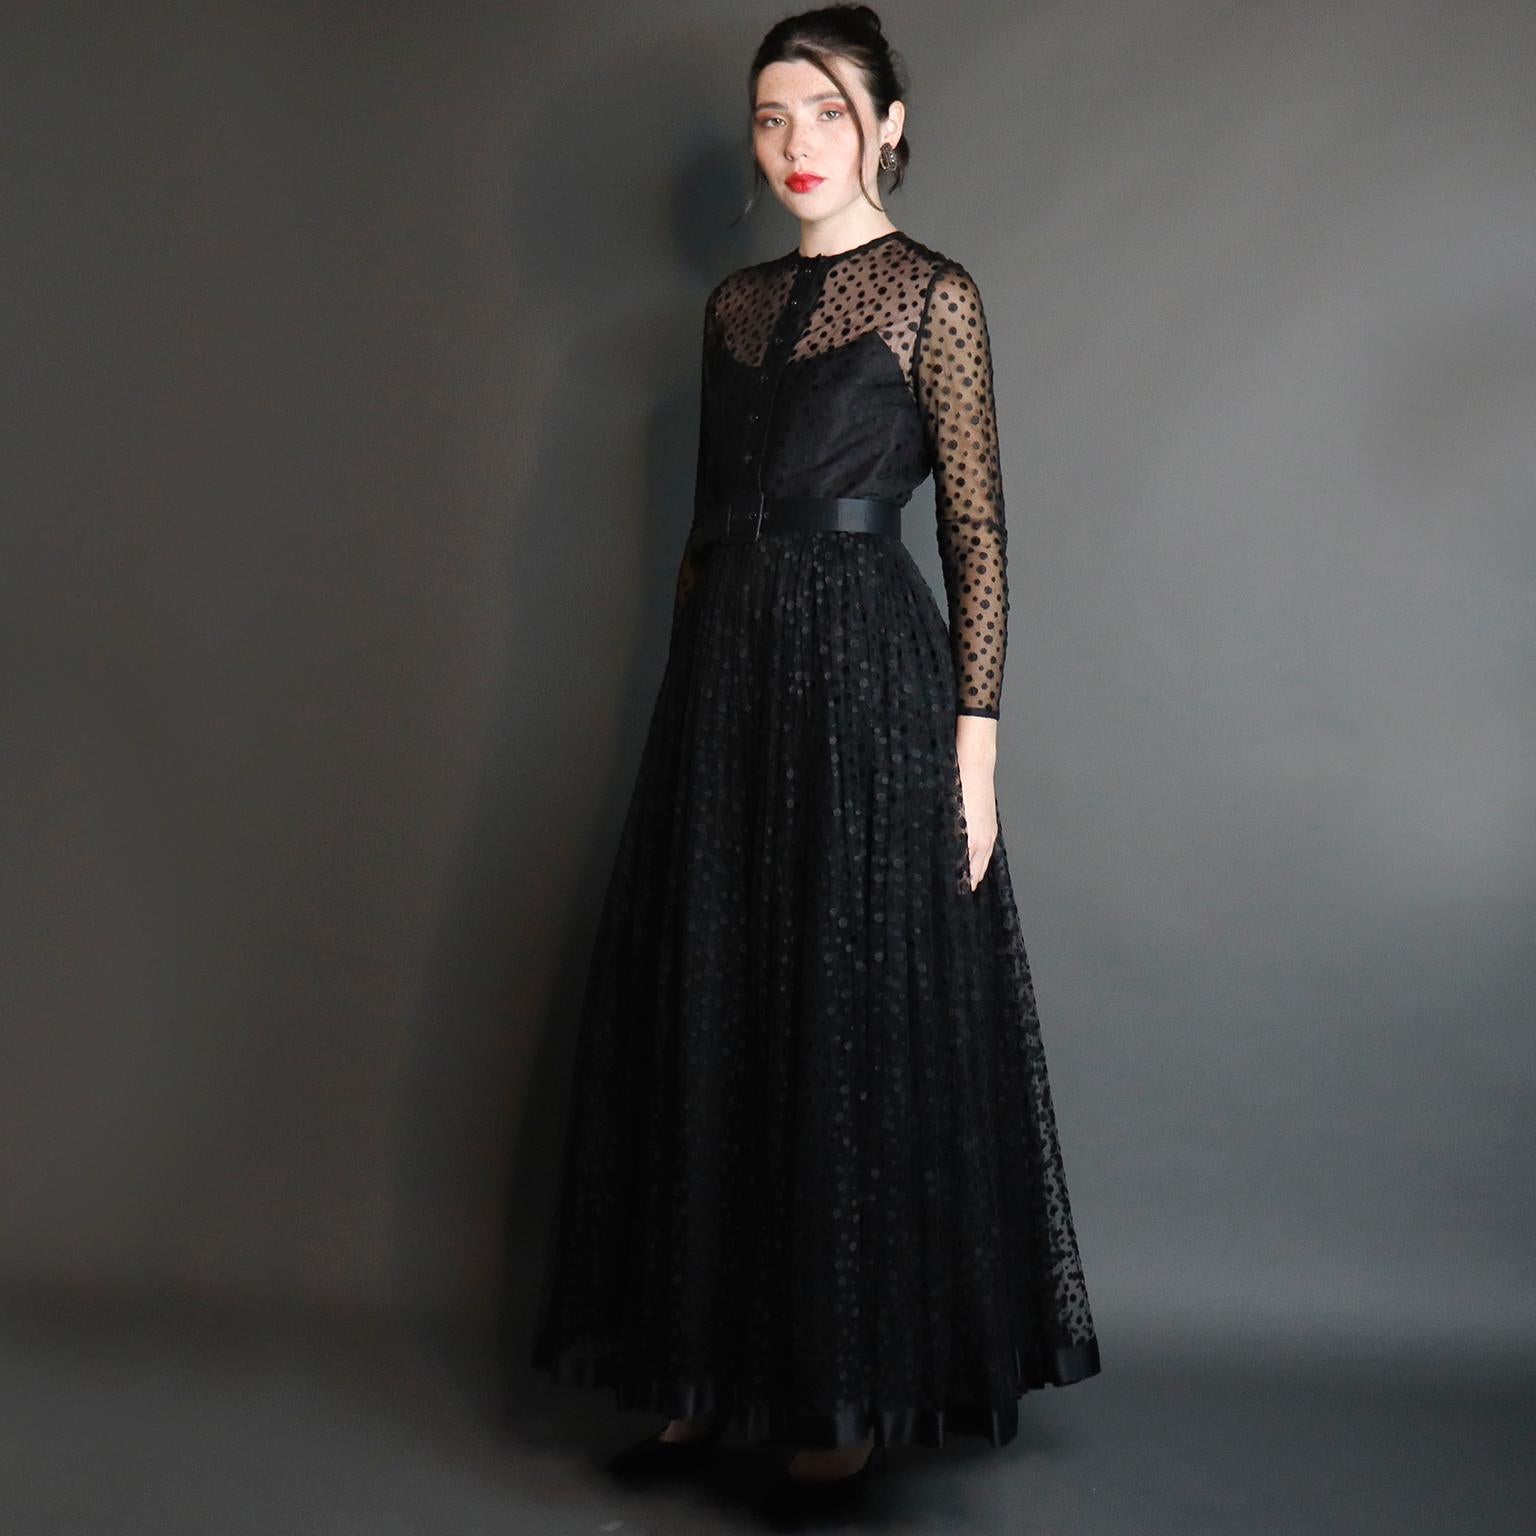 Il s'agit d'une robe de soirée noire vintage vraiment sensationnelle, conçue par Bill Blass dans les années 1970. Cette magnifique robe est composée de superpositions de taffetas de soie noire sur un filet à pois noir. La robe est ajustée à la